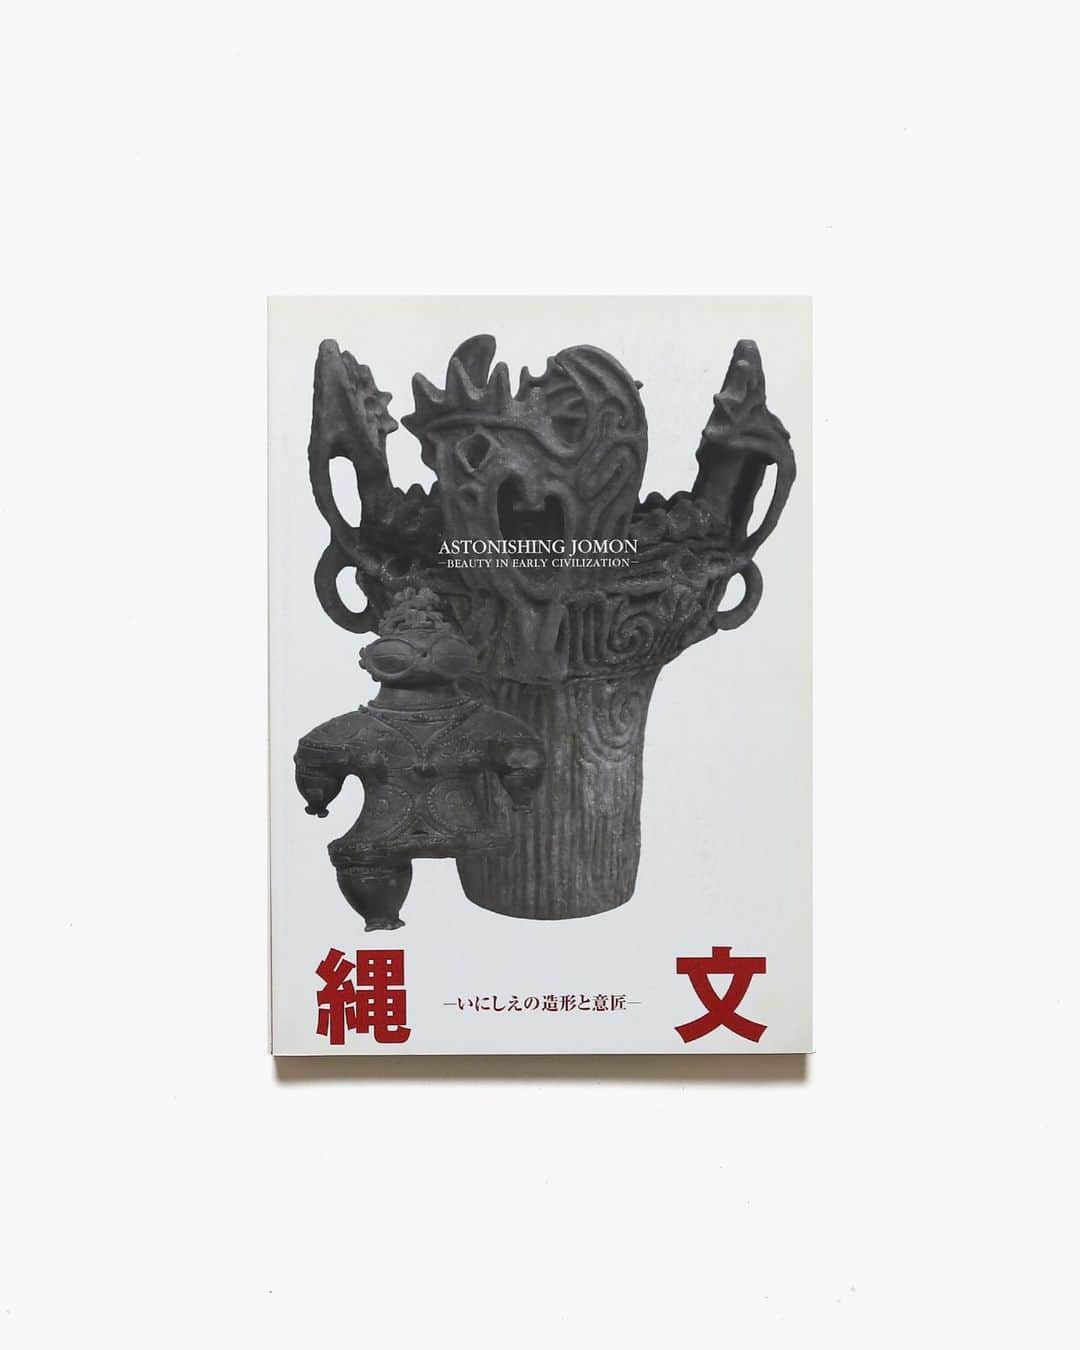 nostos booksさんのインスタグラム写真 - (nostos booksInstagram)「さとうゆかり @ykrst さんの展示にあわせて入荷した、縄文・土偶（一部埴輪）本をまとめてオンラインストアにアップしました！日本のものづくりの源流ともいえる造形美は、強烈な引力を持っています。日本列島の西へ東へ、古代日本の痕跡を辿る旅に、いざ。 　 オンラインストアへは商品タグをタップ◯ 　 入荷本からおすすめ10選  ----------  1冊目 『土偶・コスモス』 2012年にMIHO MUSEUMで開催された展示会「土偶・コスモス展」の図録。国宝3点、重要文化財21点を含む土偶や土器を多数収録し、その迫力と不思議な魅力を紹介する。   ----------  2冊目 『縄文 1万年の美の鼓動』 2018年に東京国立博物館で開催された「縄文 1万年の美の鼓動」展の図録。日本のものづくりの源流ともいえる「縄文の造形」や「縄文の美」に焦点をあて、縄文時代草創期から晩期まで、日本列島各地から出土した品々を紹介。また、火焔型土器、土偶「縄文のビーナス」などの縄文時代の国宝全6点が揃って展示されたのは史上初でもあり、非常に資料性の高い1冊。  ----------  3冊目 『日本の黎明 考古資料にみる日本文化の東と西』 1977年に京都国立博物館で開催された展示の記録を書籍化したもの。東北から西南にかけて弓なりに長く、東西で風土景観や文化遺産に大きなちがいのある日本列島。その考古学的な特徴に着目し、縄文時代から古墳時代までの人々の暮らしや道具の発展などを紹介。カラー・モノクロの図版多数。  ----------  4冊目 『埴輪美』 美術史家・野間清六編集による埴輪の写真集。女子半身像、男子立像、楽人像、武人像、動物などを象った埴輪をモノクロ写真で56点収録。巻末には各埴輪の解説も掲載。序文は高村光太郎。  ----------  5冊目 『縄文王国やまなし』 2019年に九州国立博物館で開催された展示の図録。縄文時代の最盛期の中心地域である山梨県にスポットを当て、重要文化財釈迦堂遺跡出土品をメインに躍動感あふれる文様を持つ土器、表情豊かな土偶などを紹介。   ----------  6冊目 『国宝 土偶展』 2009年から2010年にかけて東京国立博物館で開催された同名展示の図録。「土偶のかたち」「土偶芸術のきわみ」「土偶の仲間たち」というユニークな切り口で構成され、国宝3点と重要文化財23点、重要美術品2点を含む全67点の土偶を掲載。   ----------  7冊目 『日本人の原像』 旧石器時代から縄文時代、弥生時代、古墳時代まで、古代の日本人の歩みを追った資料集。石器や土偶、青銅器、埴輪などの図版を多く用いながら、社会や人々の暮らしが時代ごとにどのように変化したのかを丁寧に解説。写真は土門拳、挿画は福沢一郎、解説は芹沢長介、坪井清足、題字は勅使河原蒼風、装丁は多川精一によるもの。  ----------  8冊目 『百石譜 One Hundred Stonewares』 西野嘉章・原研哉・上田義彦コラボレーションのマニエリスム博物誌3作目。東京大学創立130周年記念事業出版物として企画された、総合研究博物館に蓄積された稀少な石器類コレクションの写真集。先史人類学、考古学、考古美術の三部門から選び抜かれた石器、石斧、石剣、石鍬など100余点を収録。  ----------  9冊目 『縄文 いにしえの造形と意匠』 2008年に兵庫陶芸美術館で開催された展示の図録。東北・関東・甲信越地方で出土した縄文土器や土偶など約250点を紹介。独特のかたちや意匠、そこに秘められた縄文人の思想などを造形美とともに探る。  ----------  10冊目 『群馬の埋蔵文化財 畏れと祈り』 群馬県出土の埋蔵文化財を紹介する資料集。「縄文」「弥生」「古墳」「飛鳥・奈良・平安」と4つの時代に整理し、歴史的、美的価値の高いものを年代順に掲載。  ----------  店舗情報はこちら @nostosbooks  ----------  #土偶 #縄文 #nostosbooks #ノストスブックス #祖師ヶ谷大蔵 #砧」4月23日 17時41分 - nostosbooks